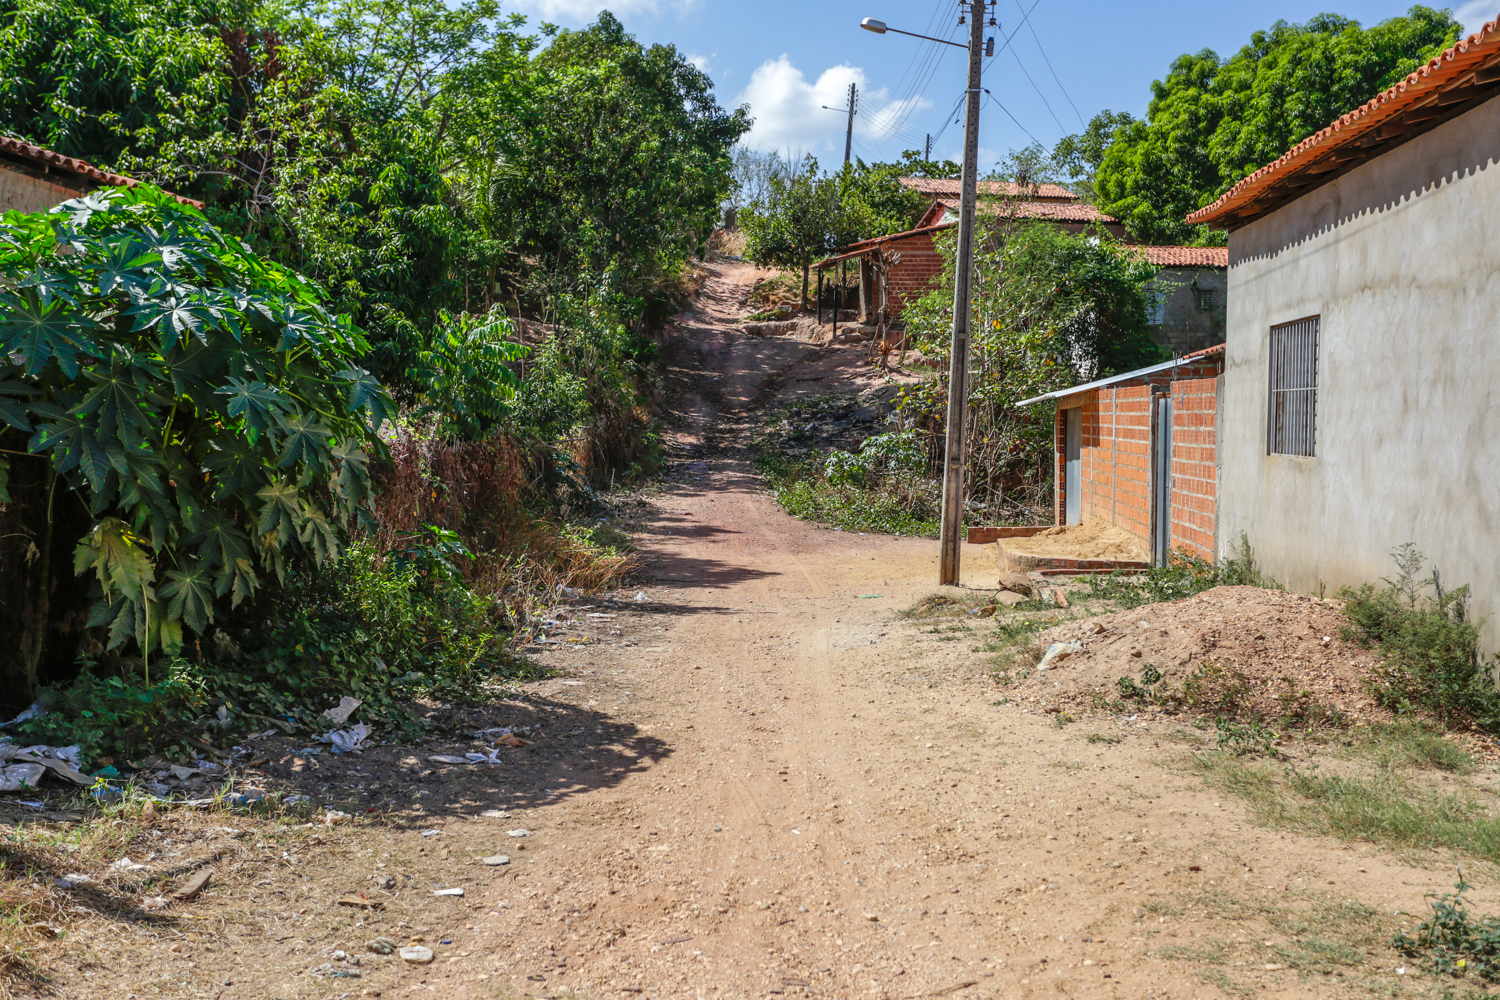 Moradores sofrem com falta de pavimentação na Vila Irmã Dulce